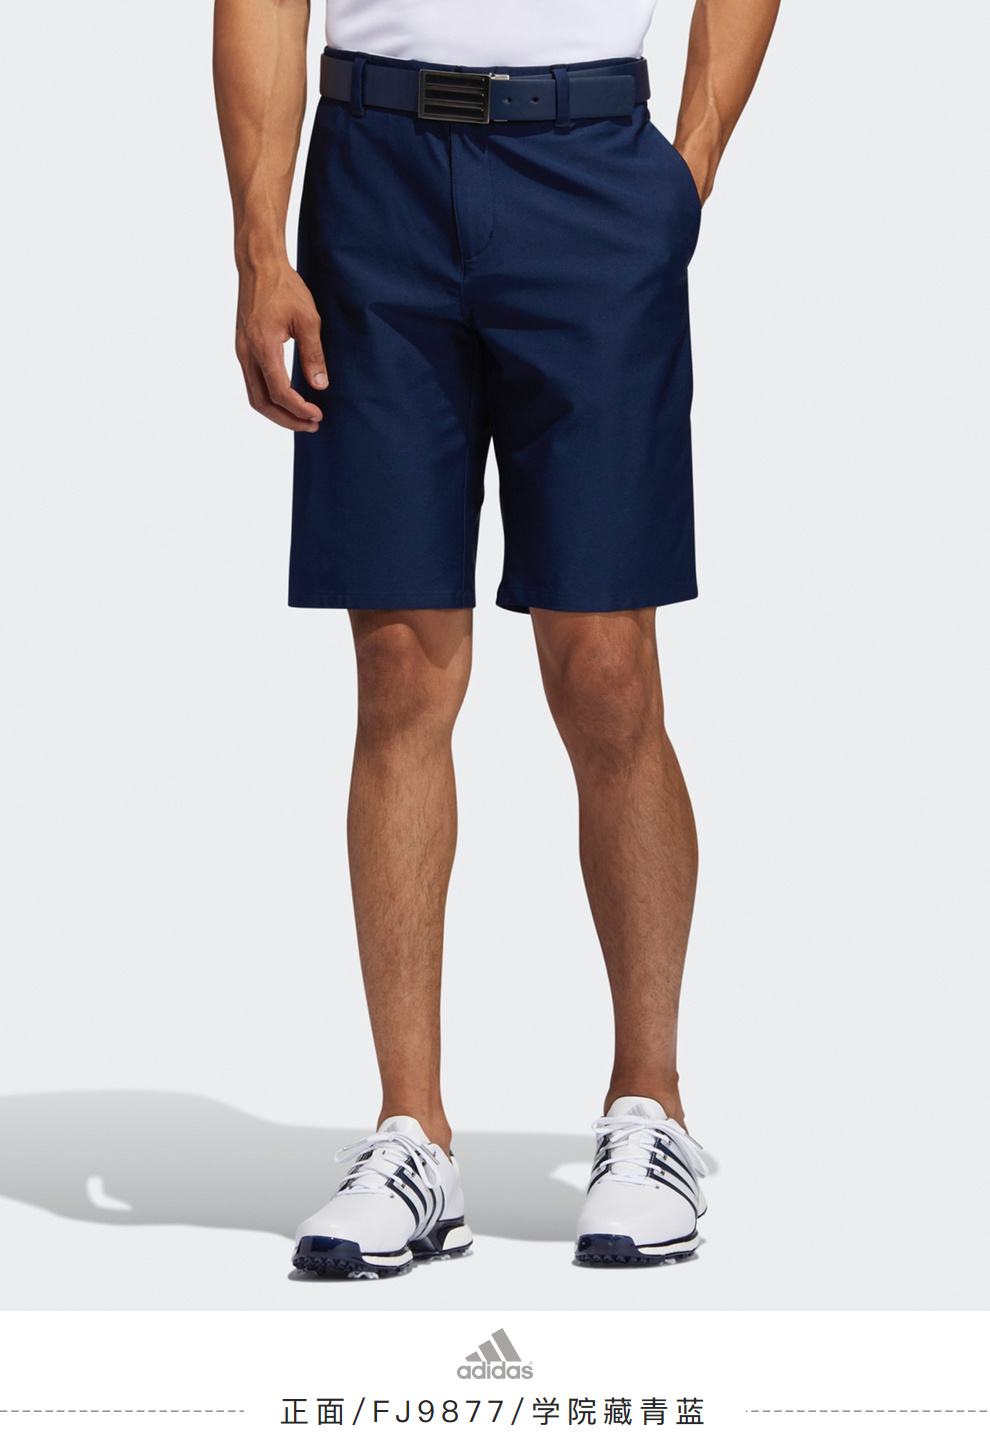 【新品】Adidas阿迪达斯高尔夫服装男士短裤速干休闲运动短裤黑色